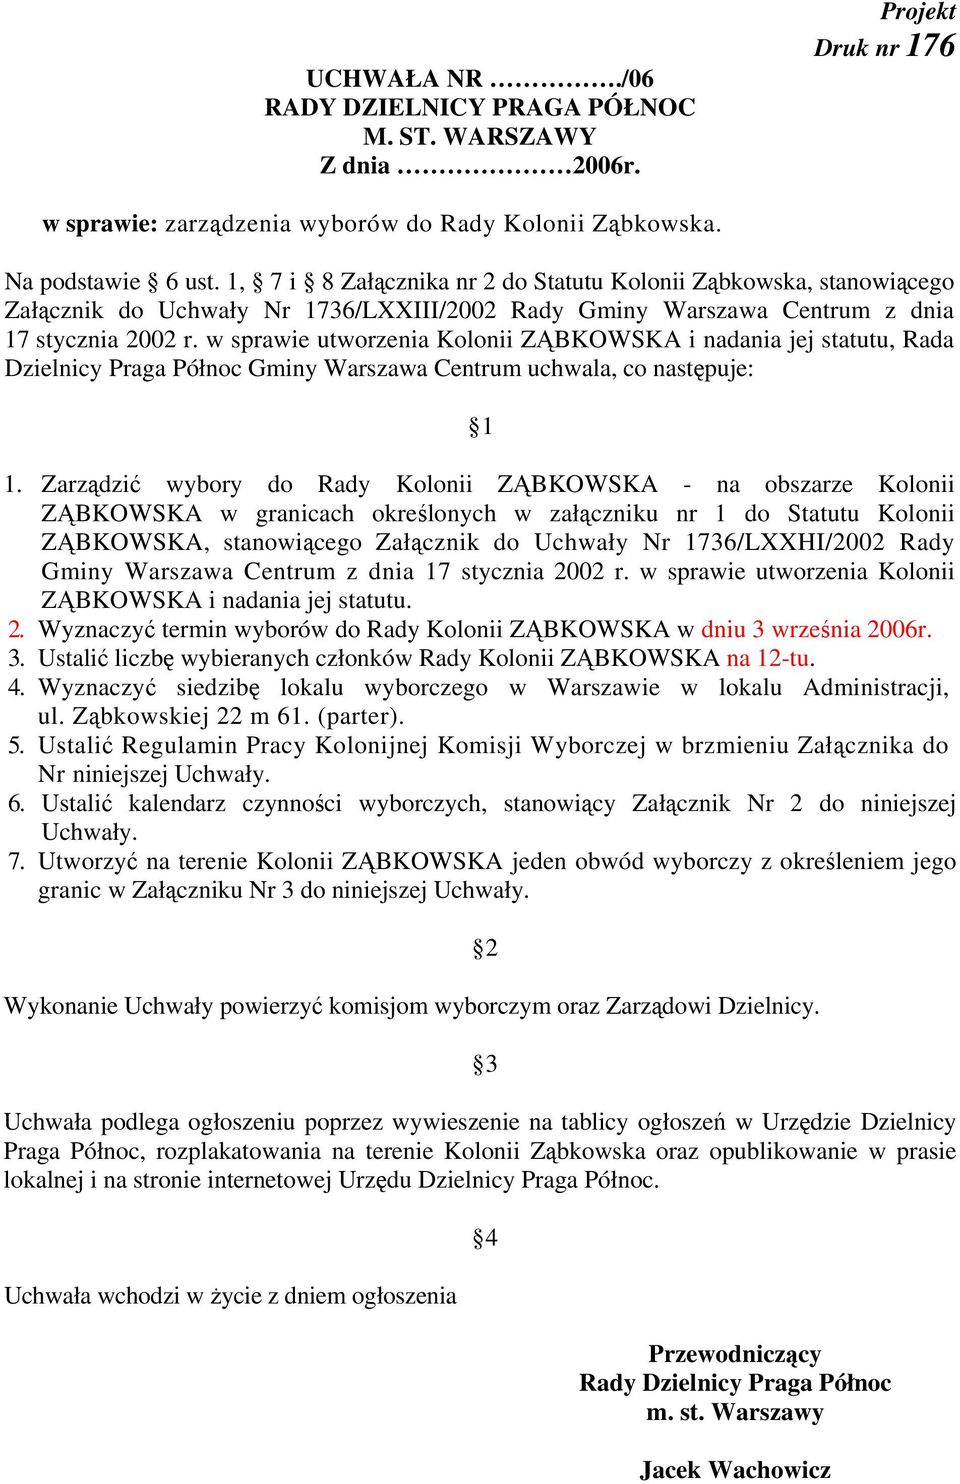 w sprawie utworzenia Kolonii ZĄBKOWSKA i nadania jej statutu, Rada Dzielnicy Praga Północ Gminy Warszawa Centrum uchwala, co następuje: 1 1.